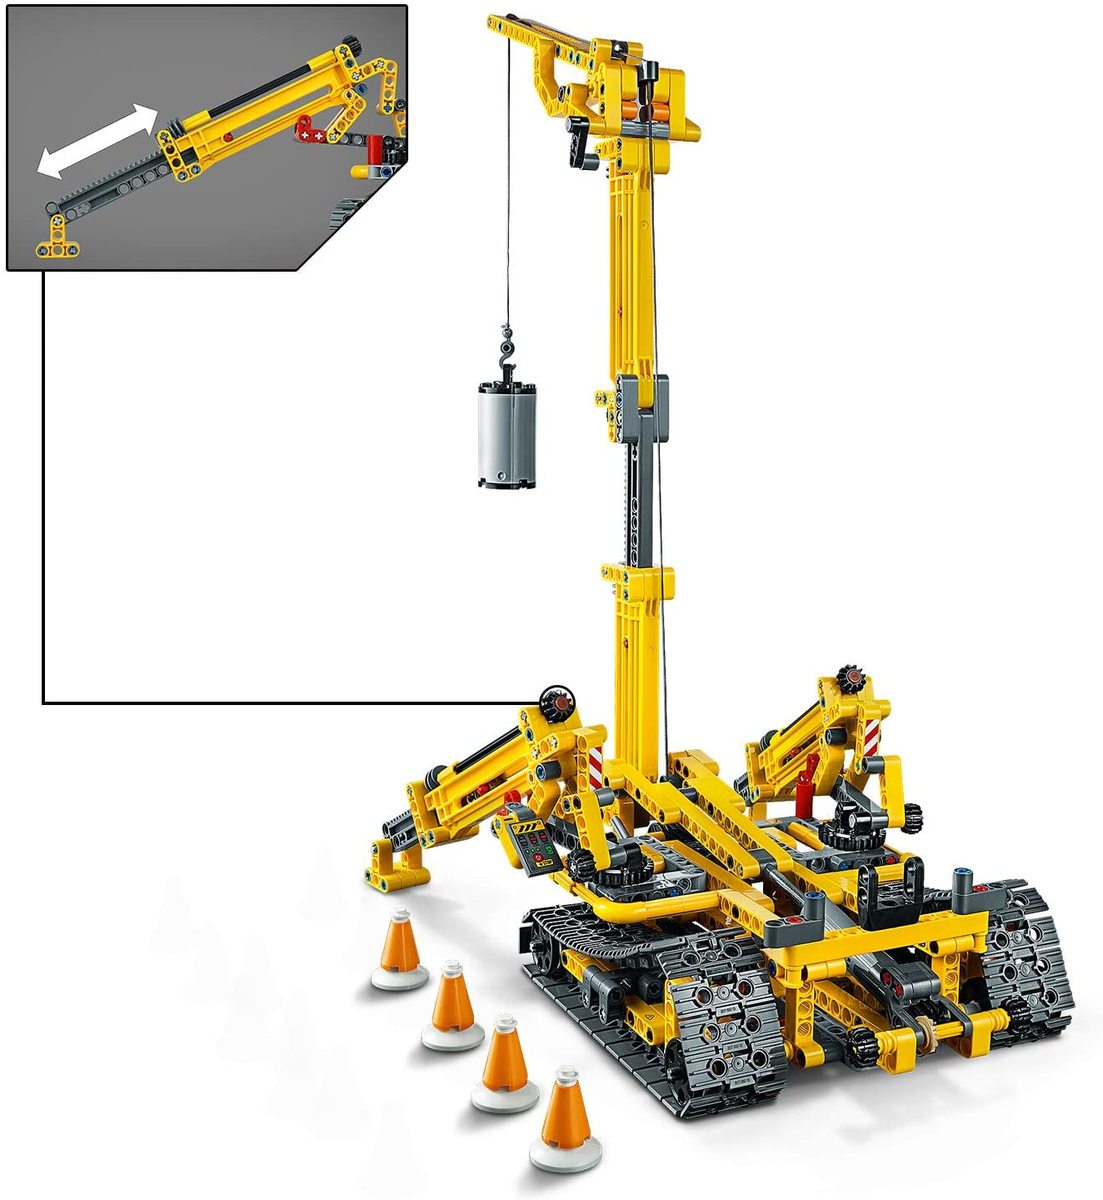 楽天市場 レゴ テクニック スパイダークレーン 497 10歳以上 Lego Technic ブロック おもちゃ 知育玩具 レゴジャパン 男の子 車 クレーン車 Shopアベイル